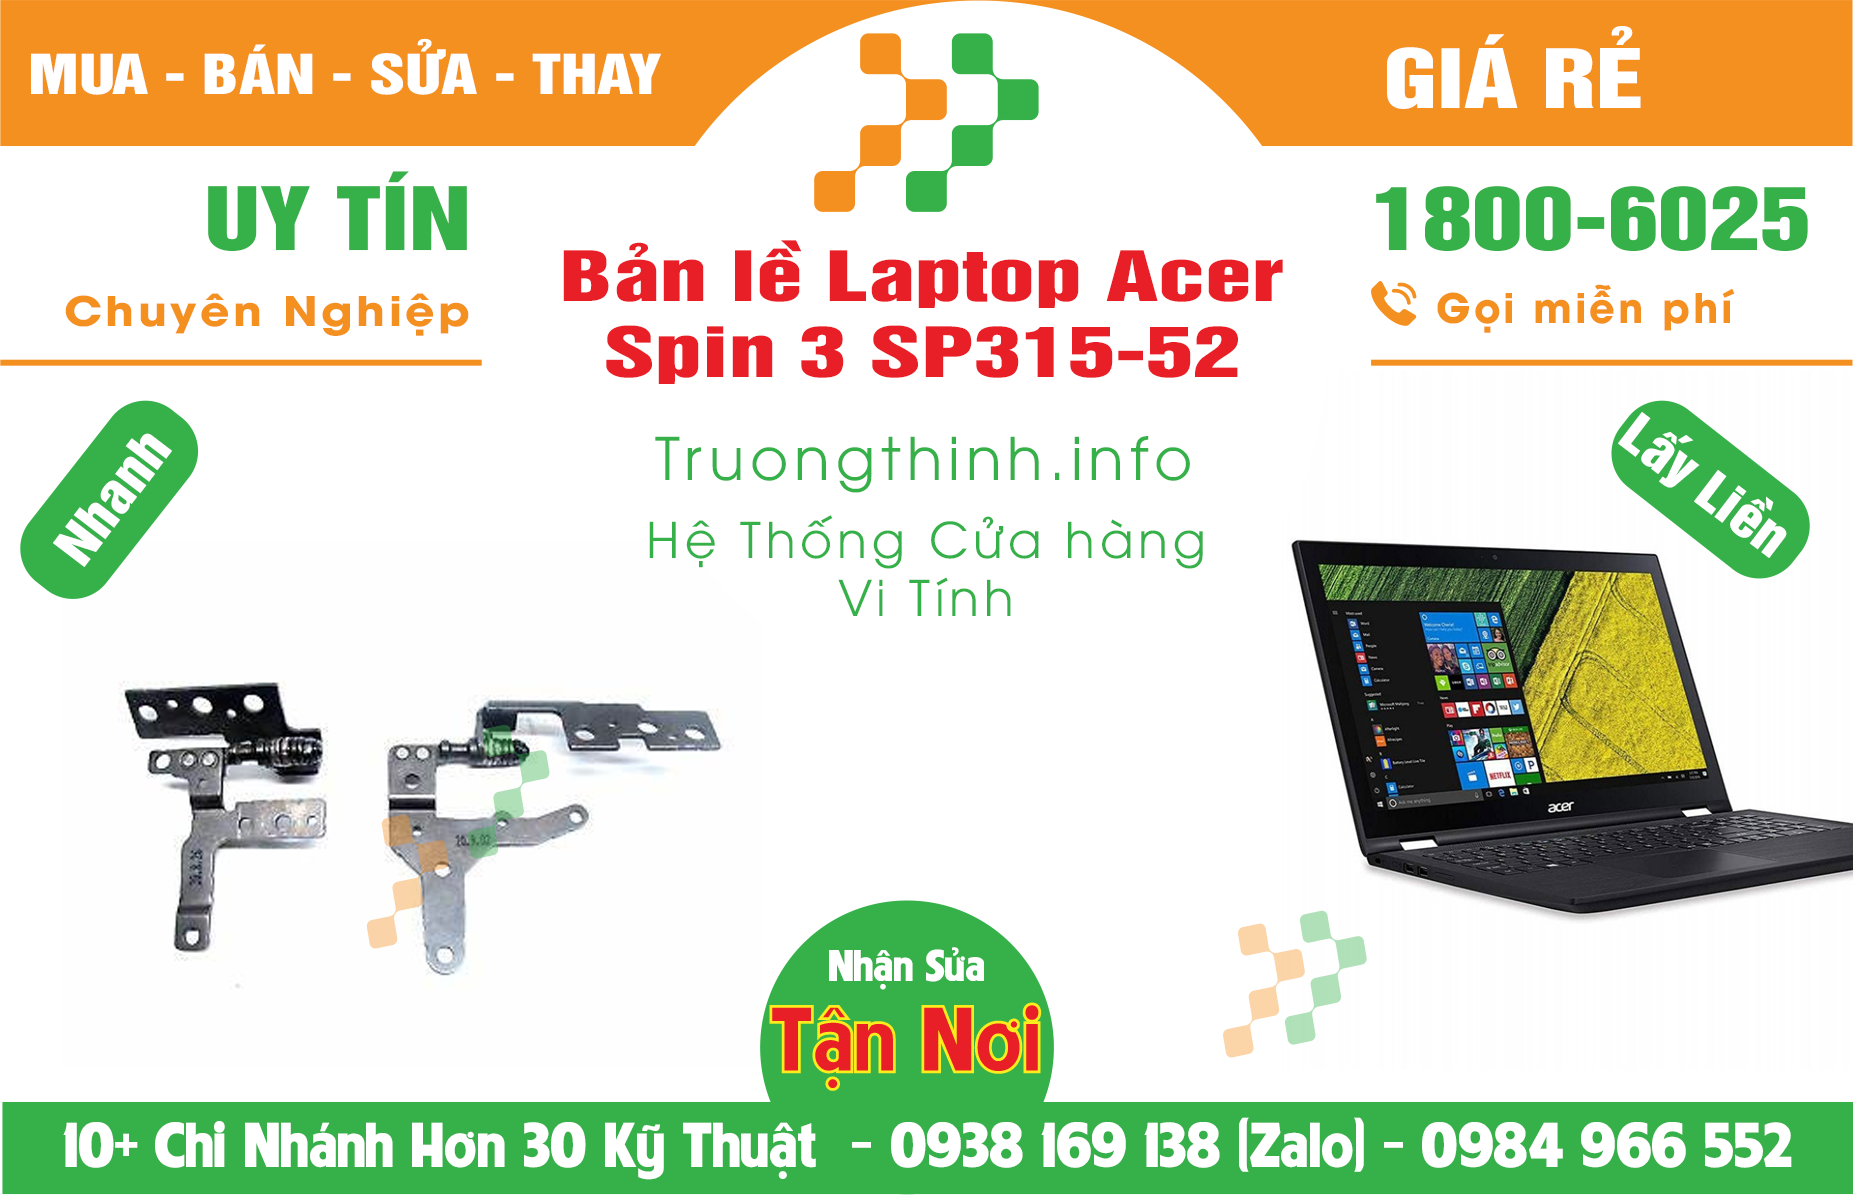 Mua Bán Bản lề Laptop Acer Spin 3 SP315-52 Giá Rẻ | Máy Tính Trường Thịnh Giá Rẻ